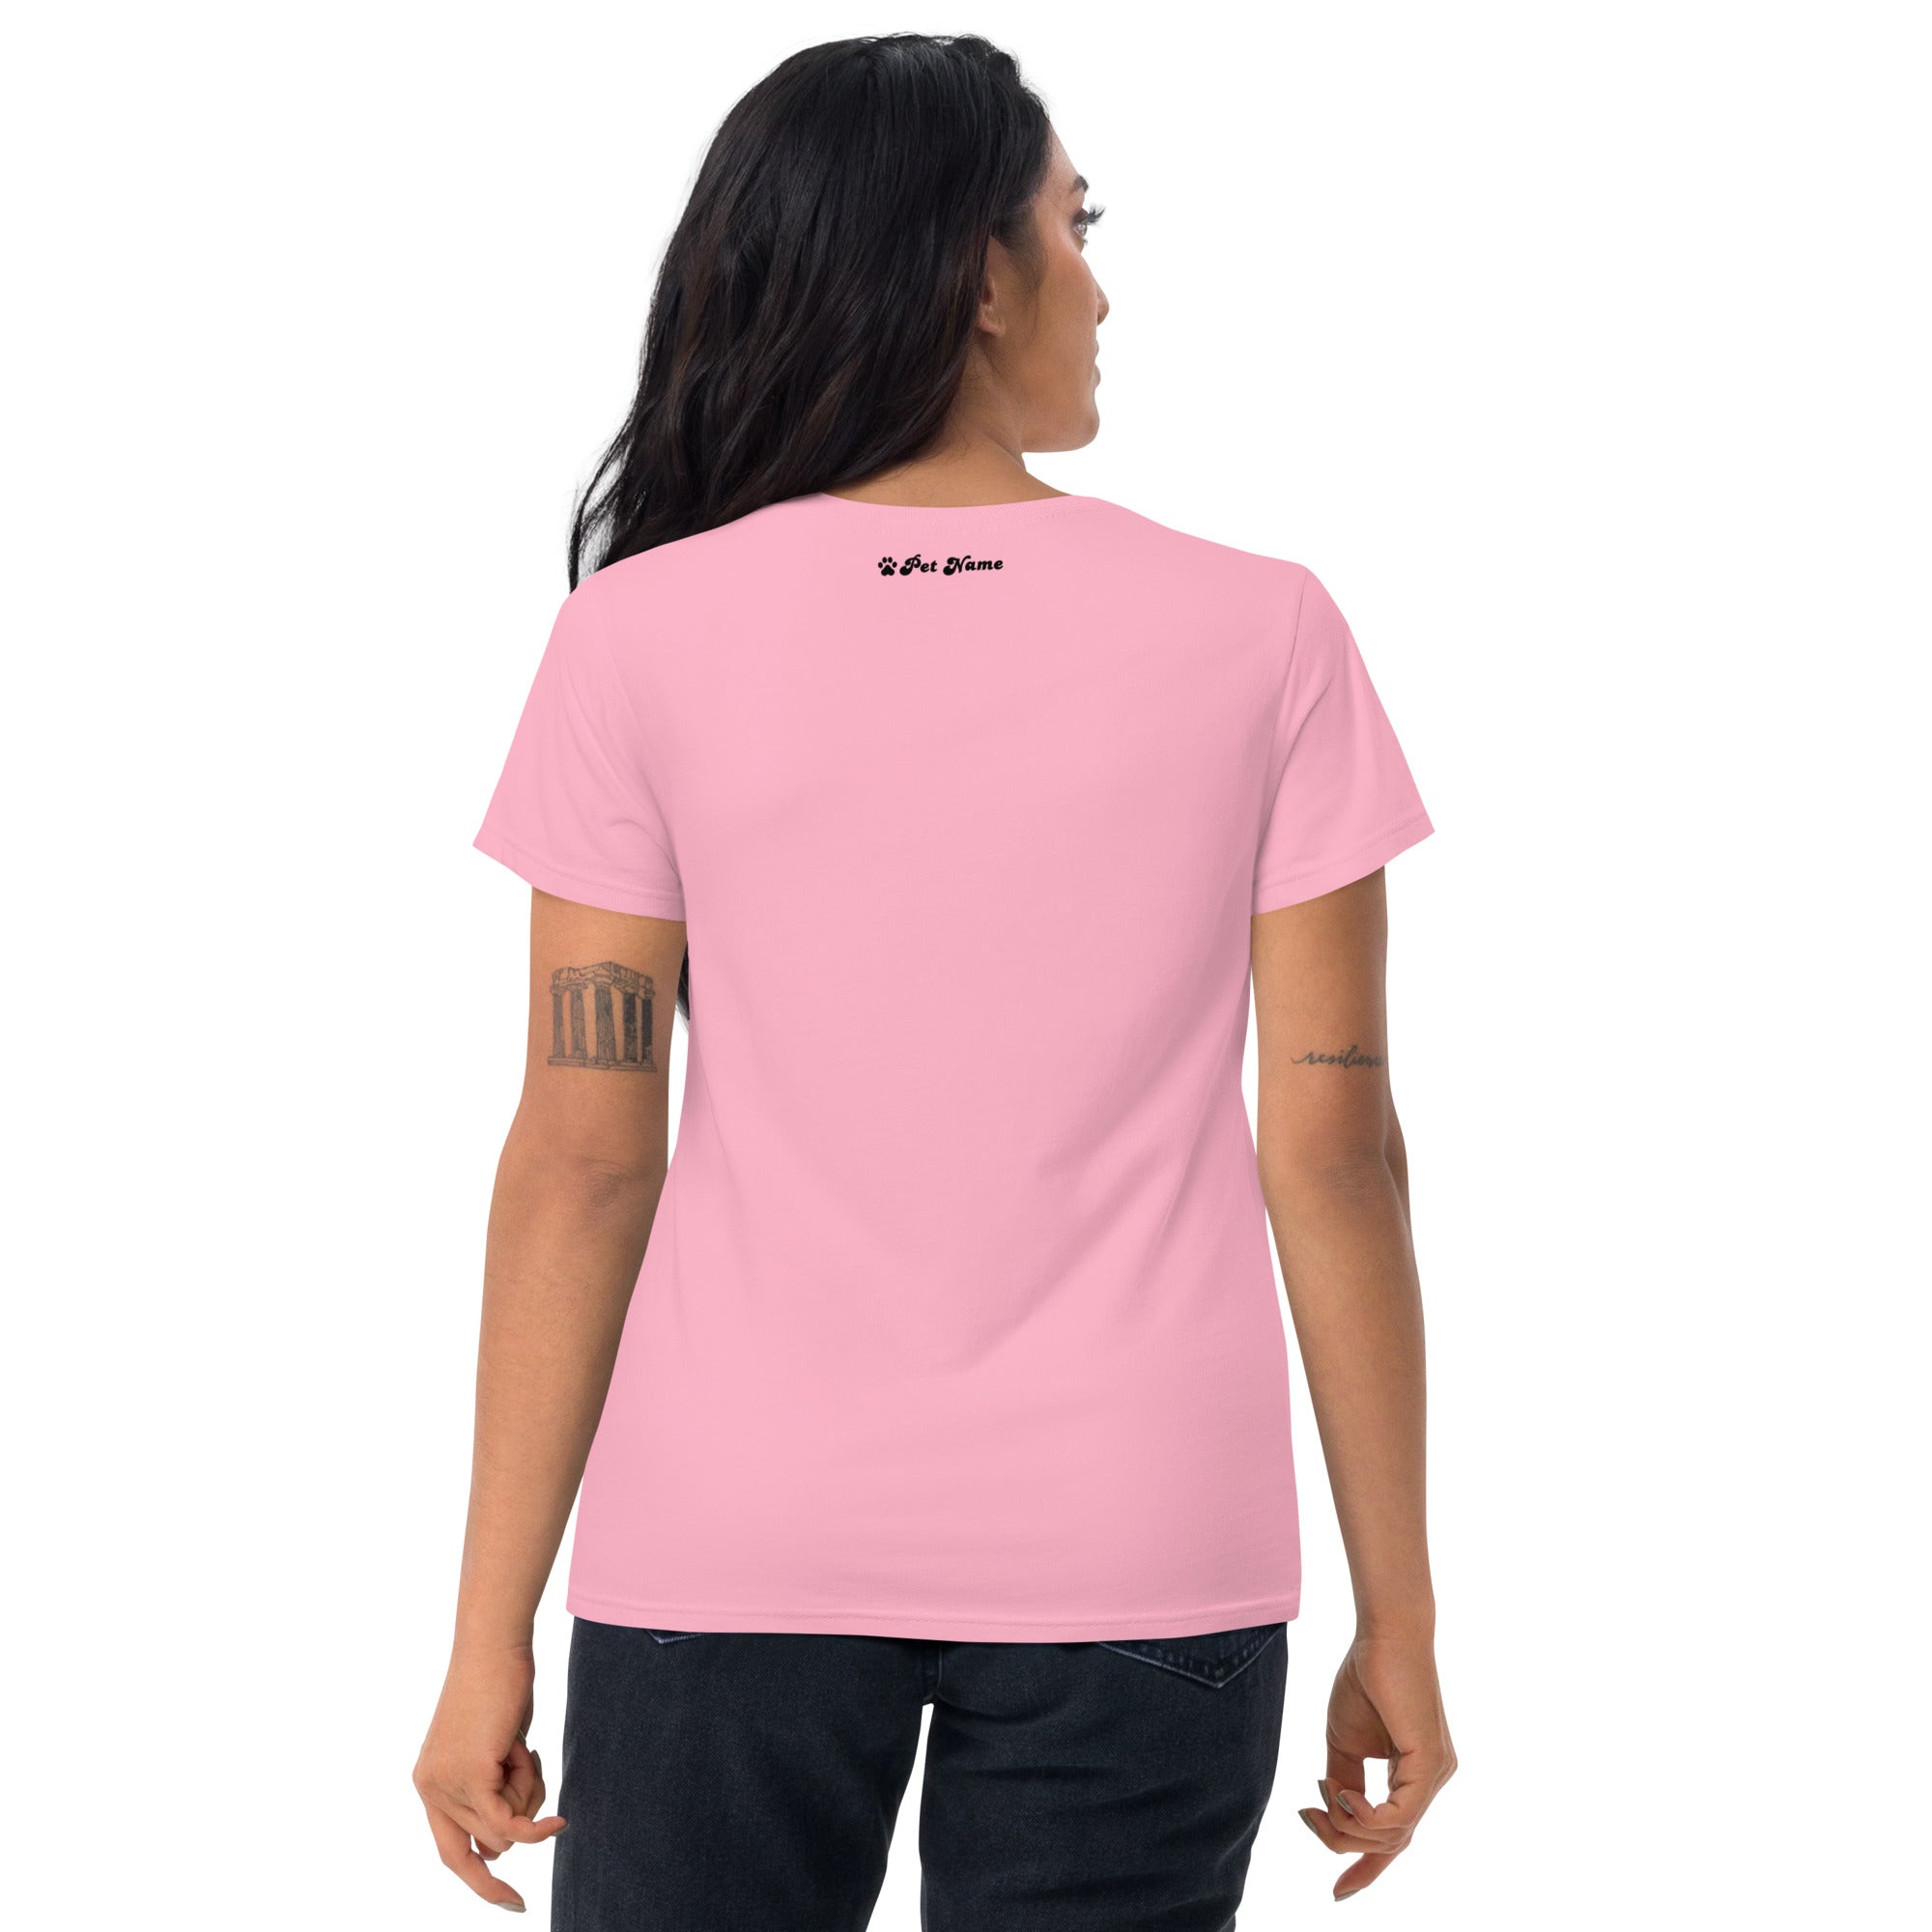 Affenpinscher Women's short sleeve t-shirt